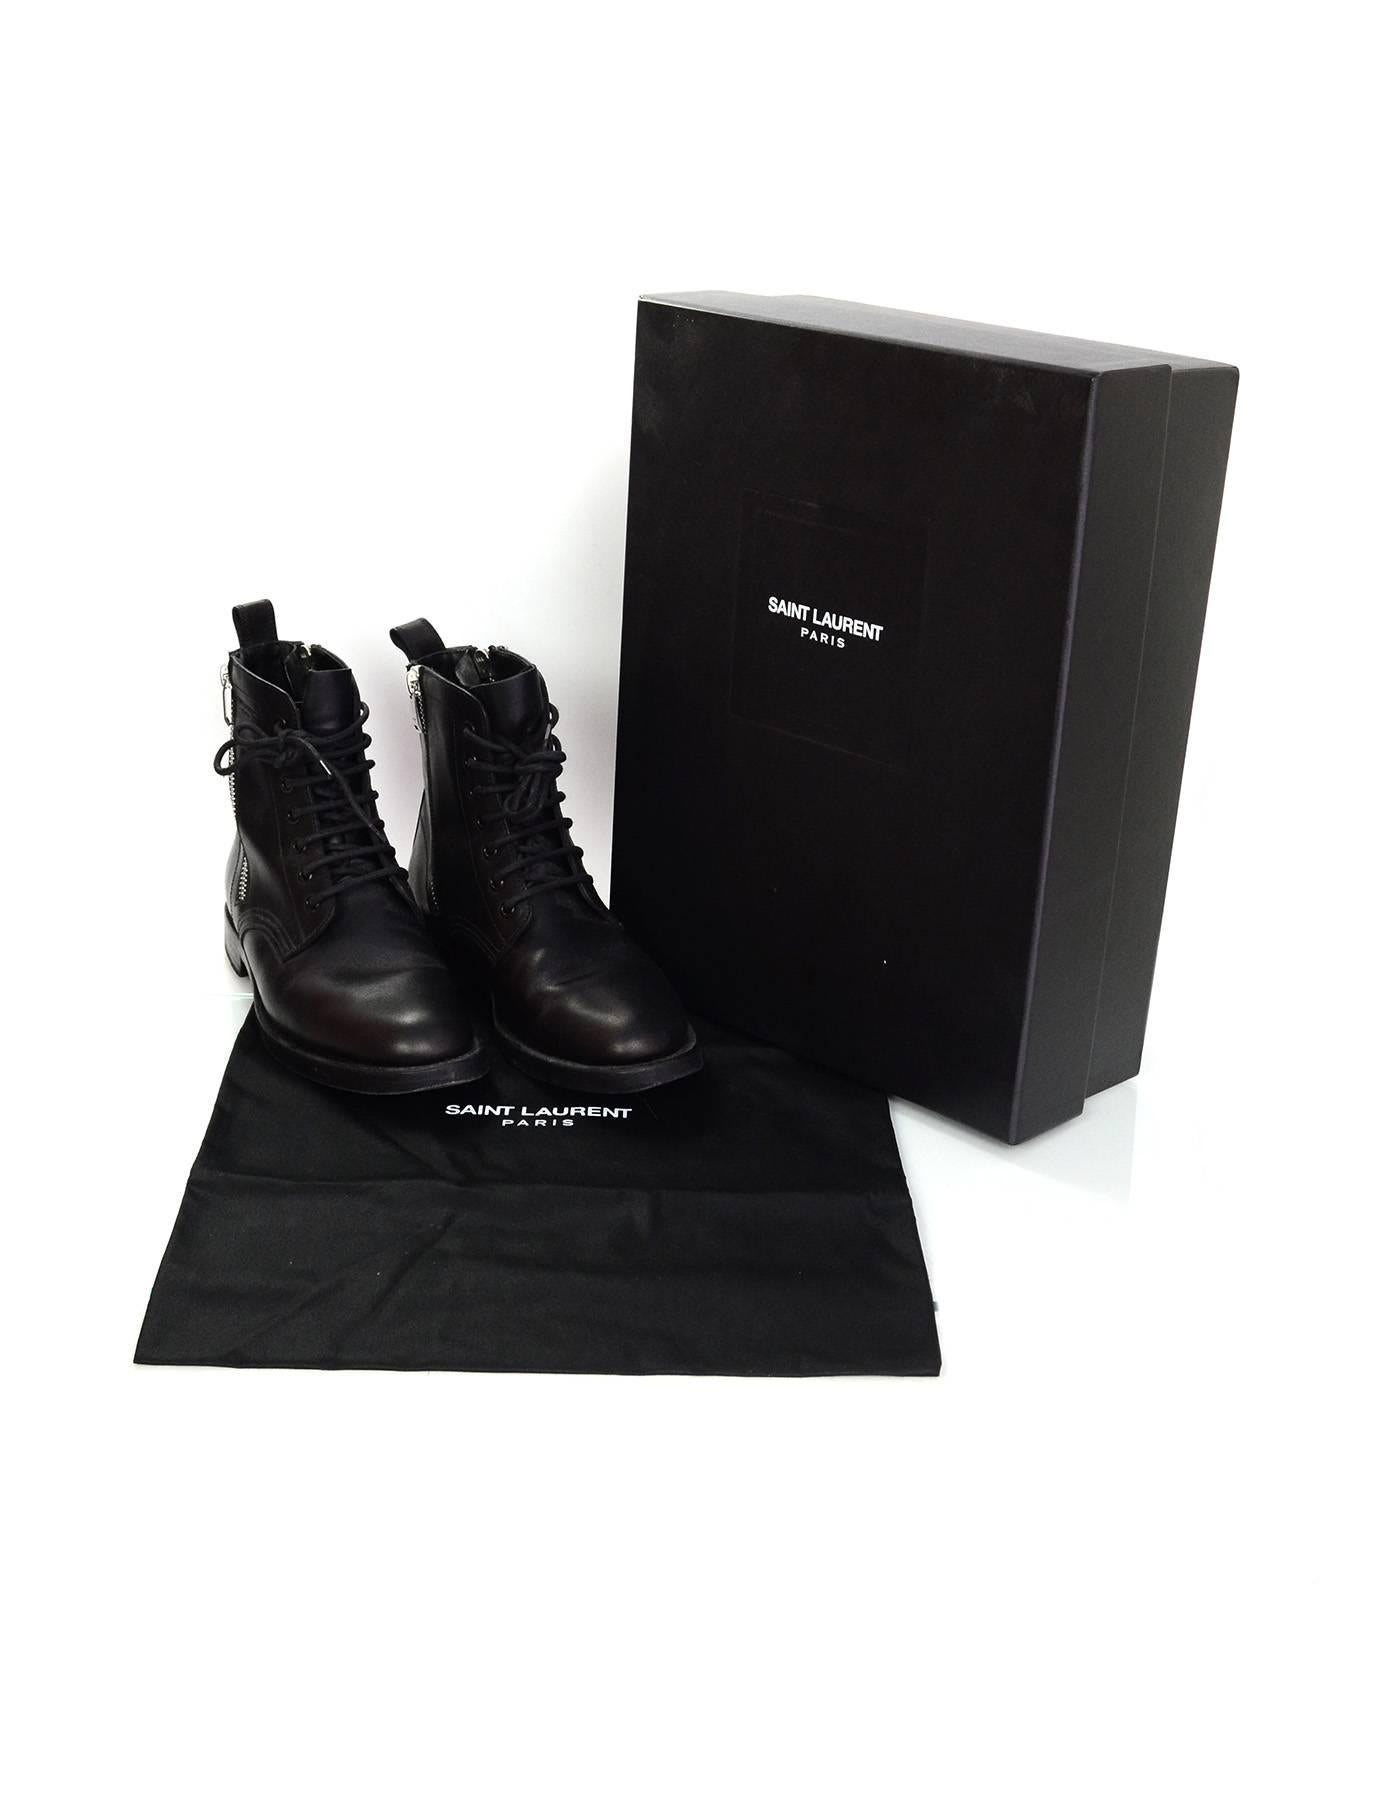 Saint Laurent Black Leather Combat Ankle Boots Sz 38.5 rt. $1, 295 4